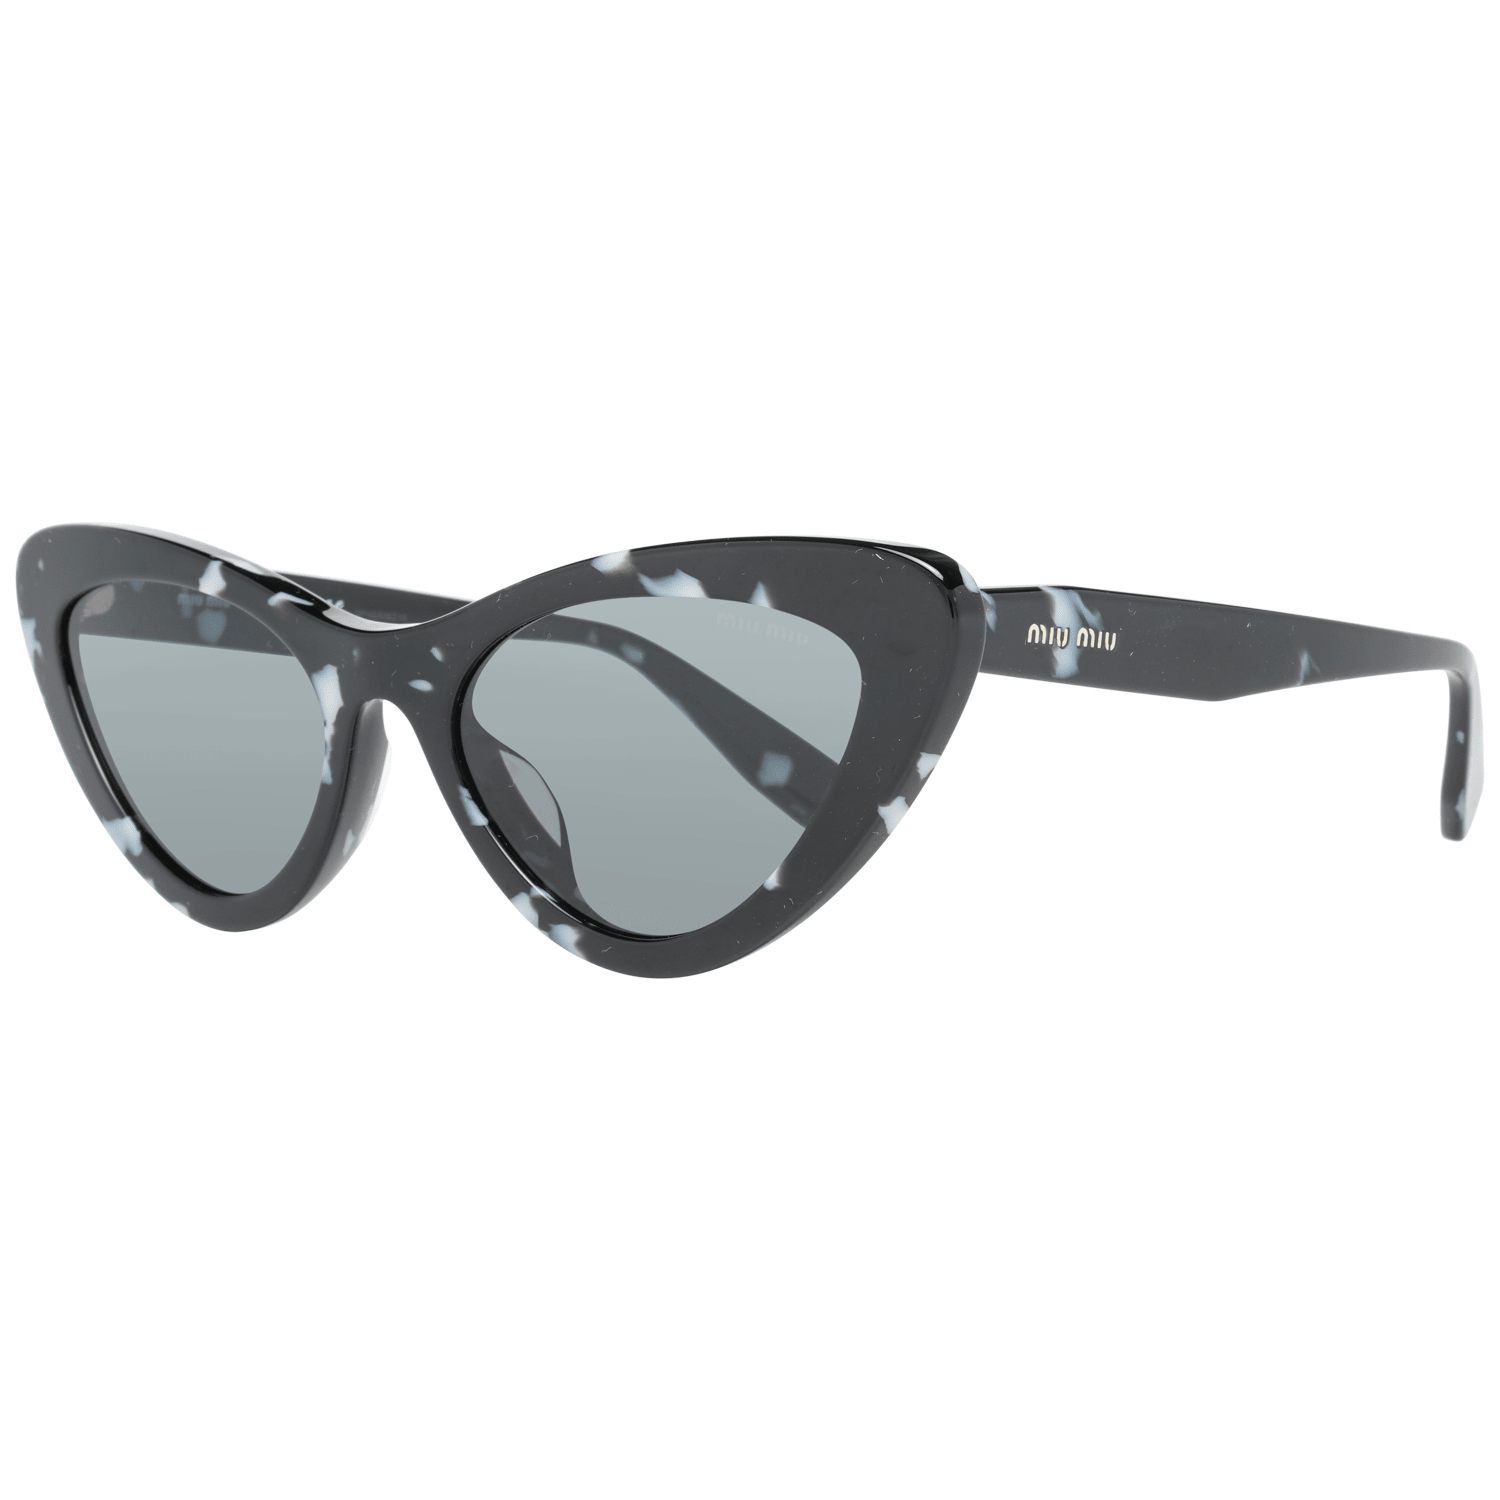 Miu Miu Women's Sunglasses Black U01VSA 55PC79K1